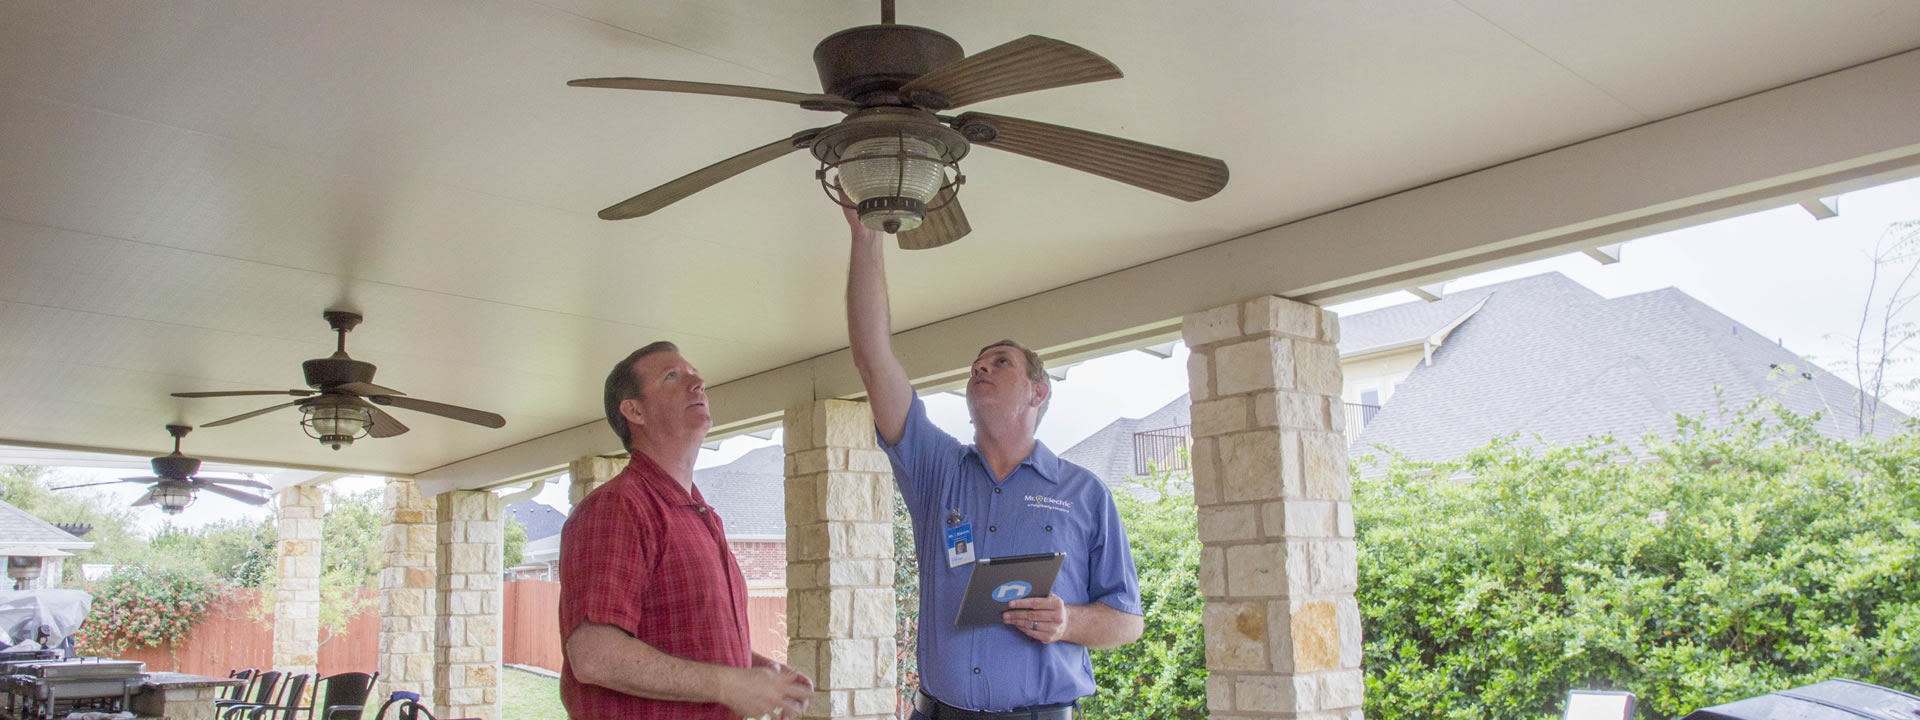 Ceiling Fan Installation in Red Oak, TX